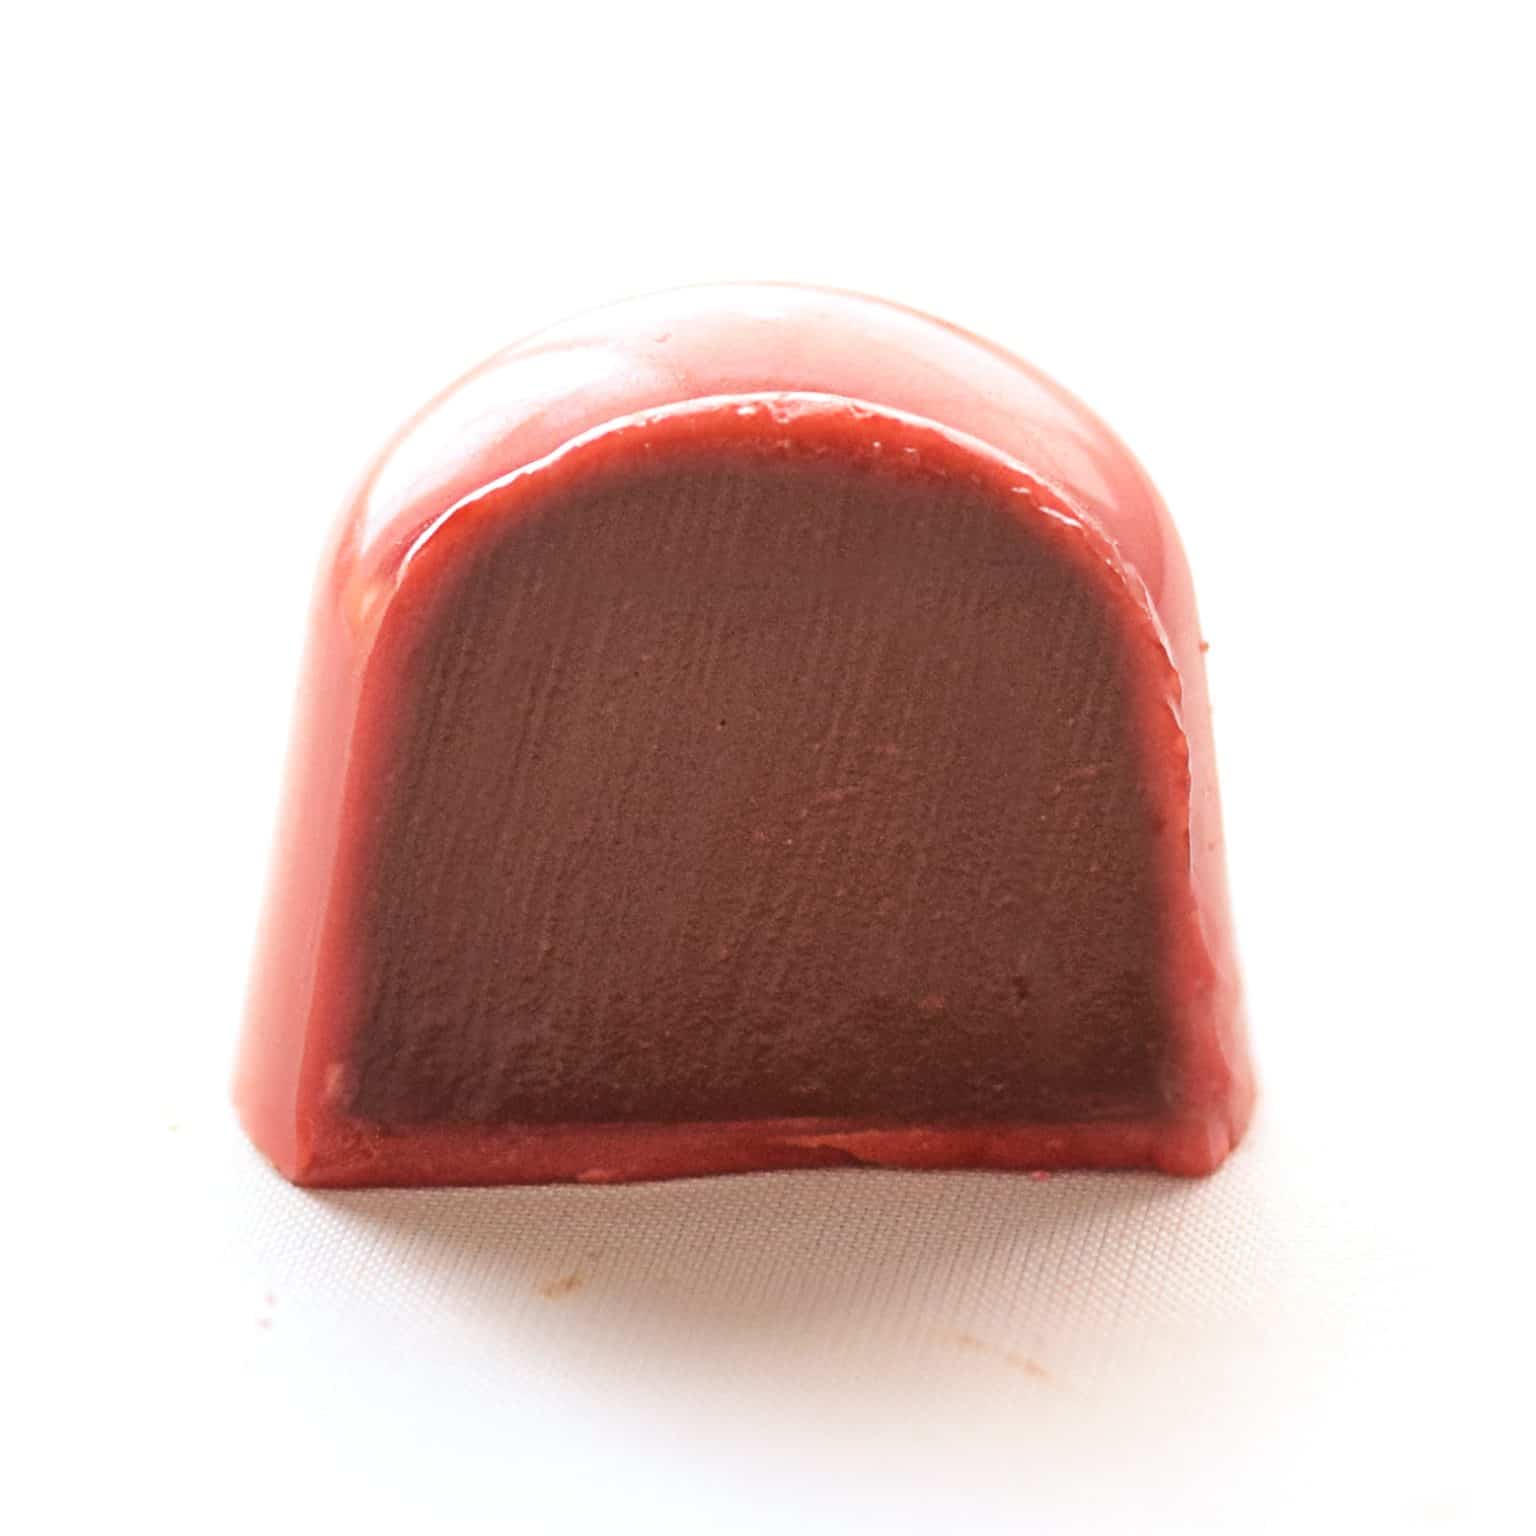 Strawberry Dark Chocolate